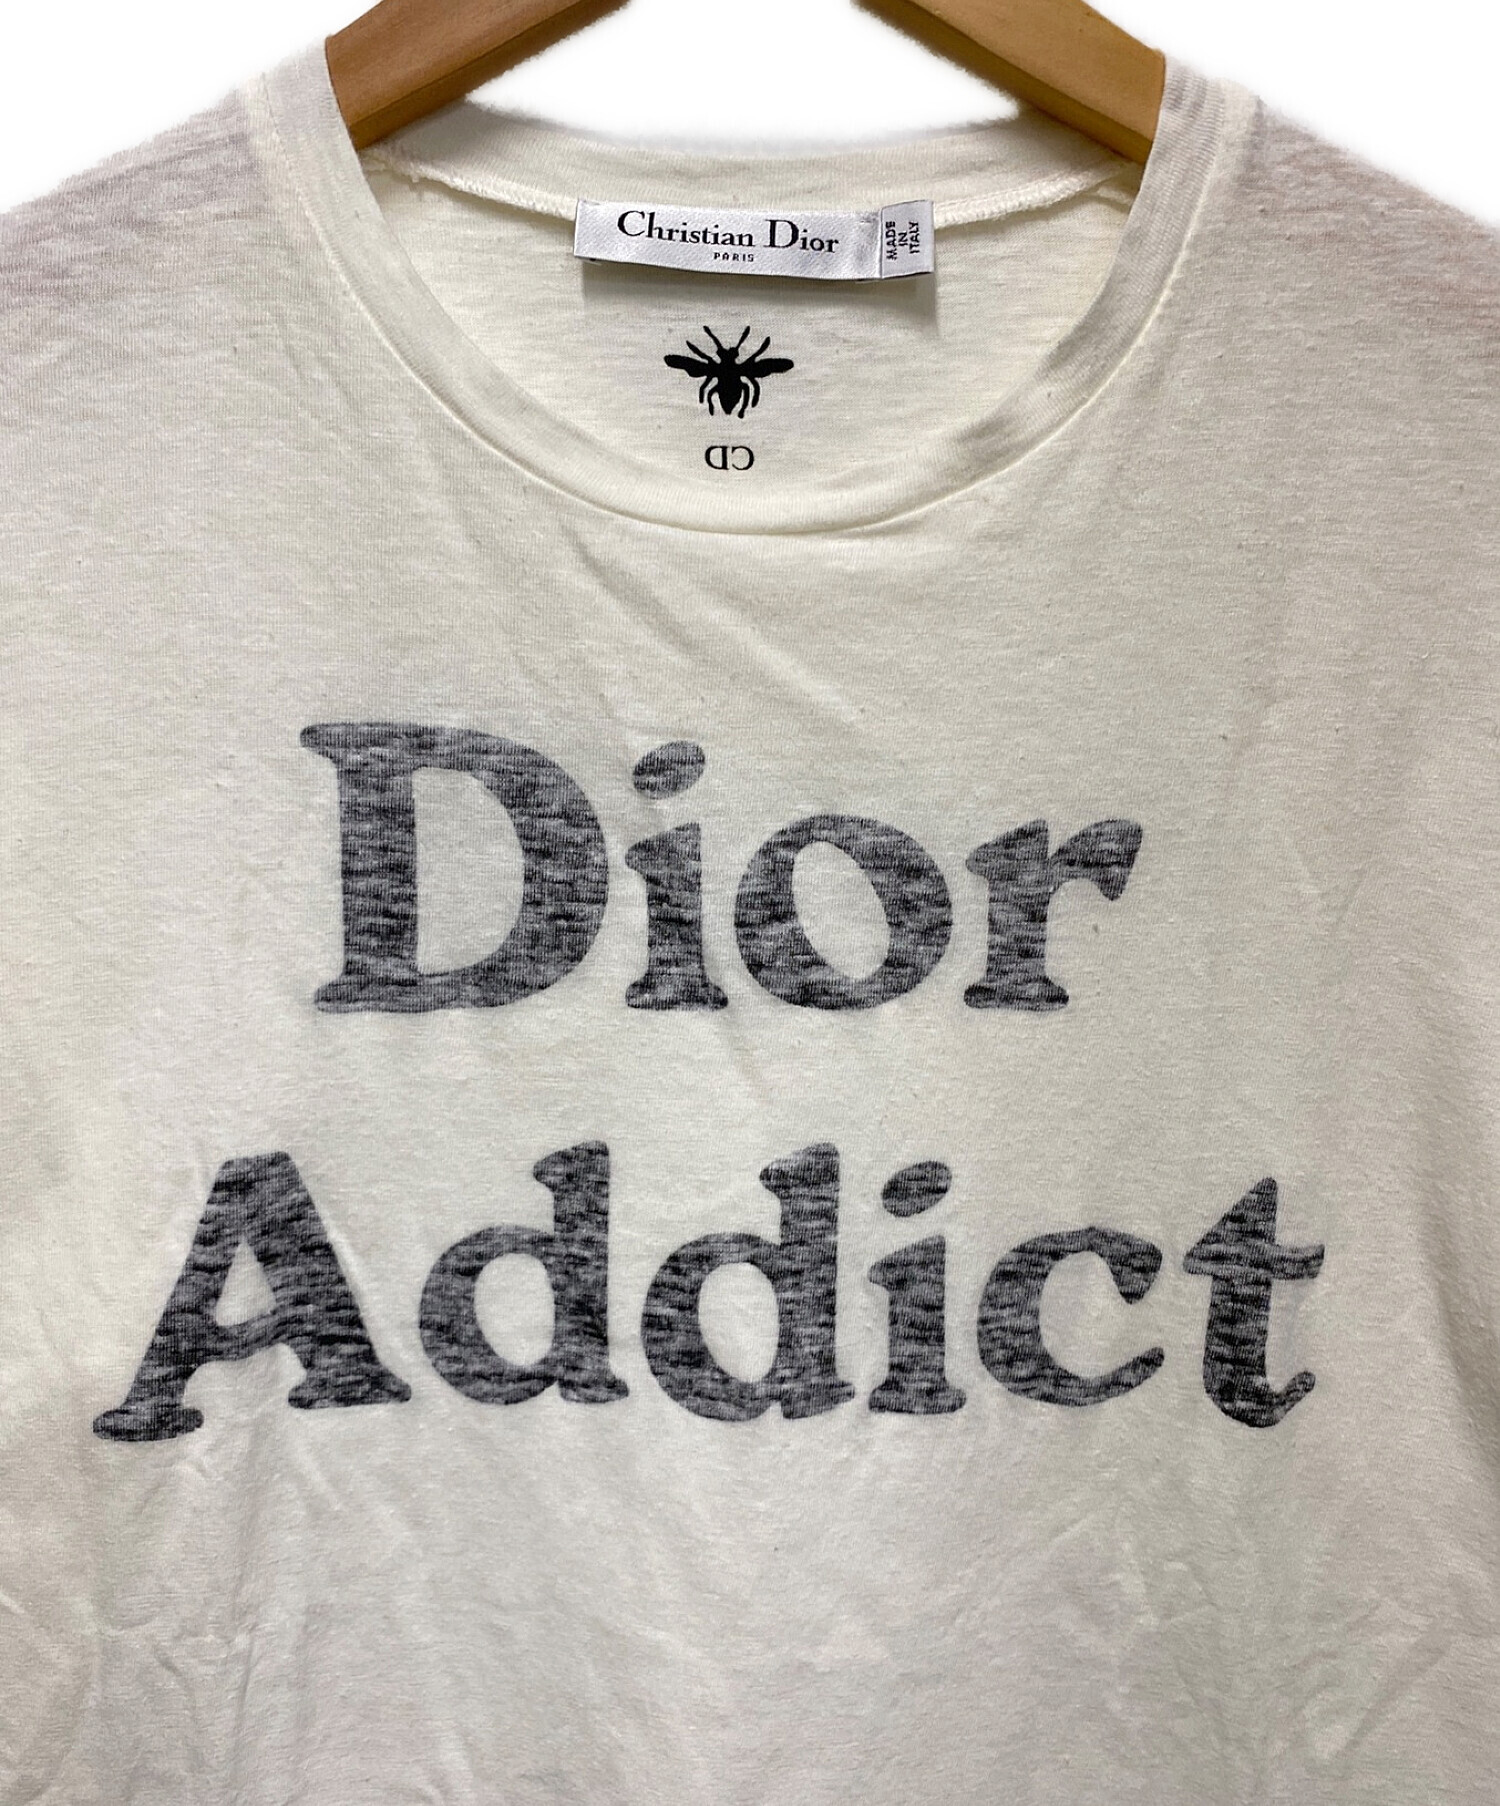 Christian Dior (クリスチャン ディオール) Dior Addict T shirt アイボリー サイズ:S